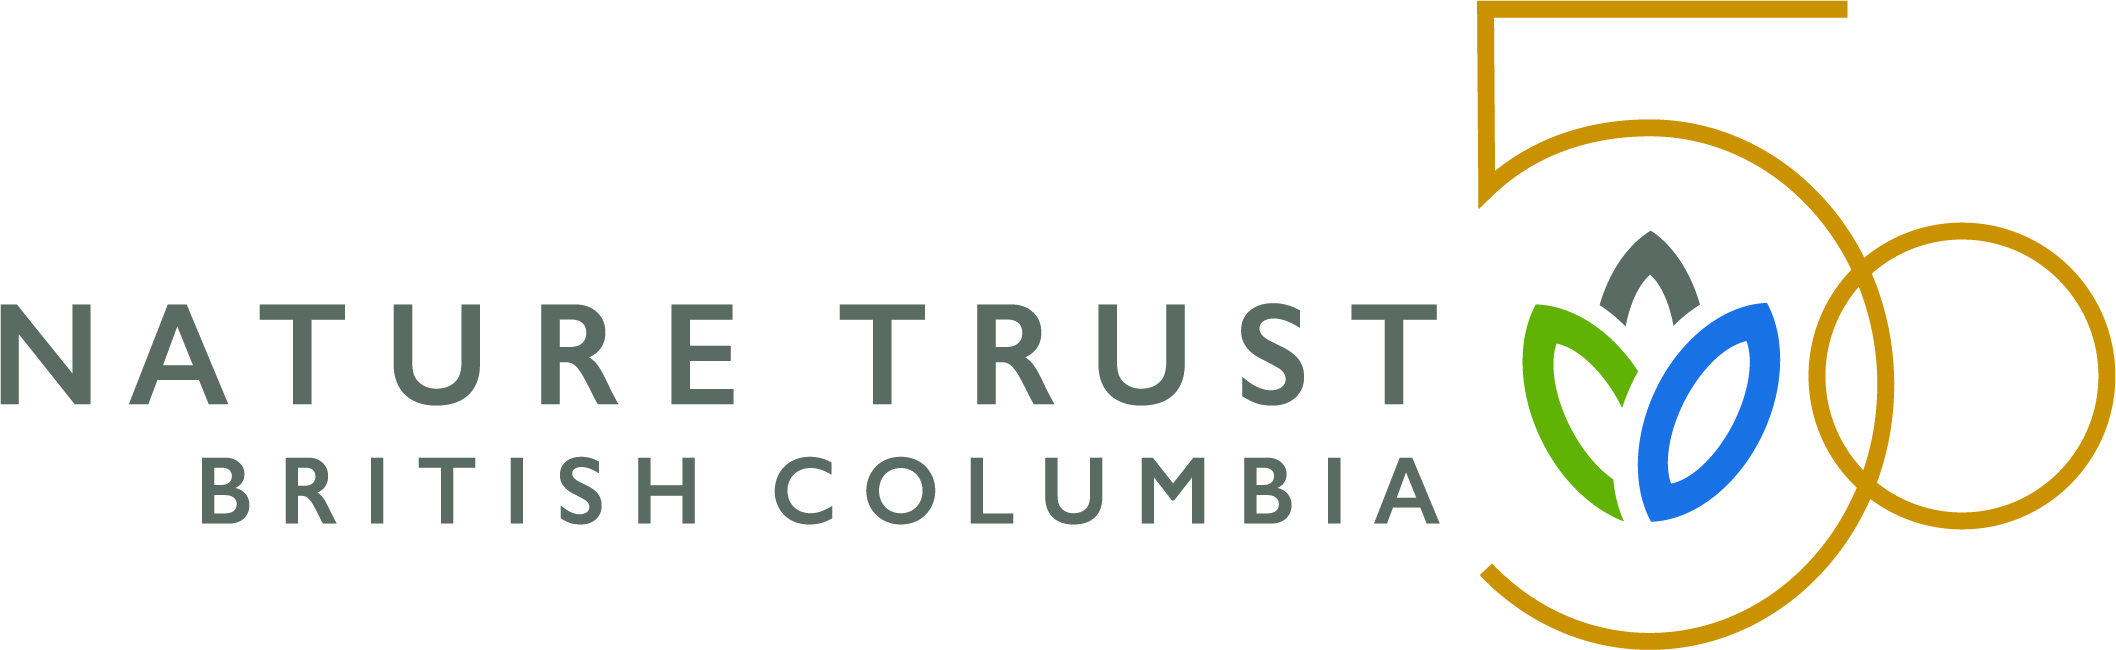 The Nature Trust of British Columbia logo.jpg